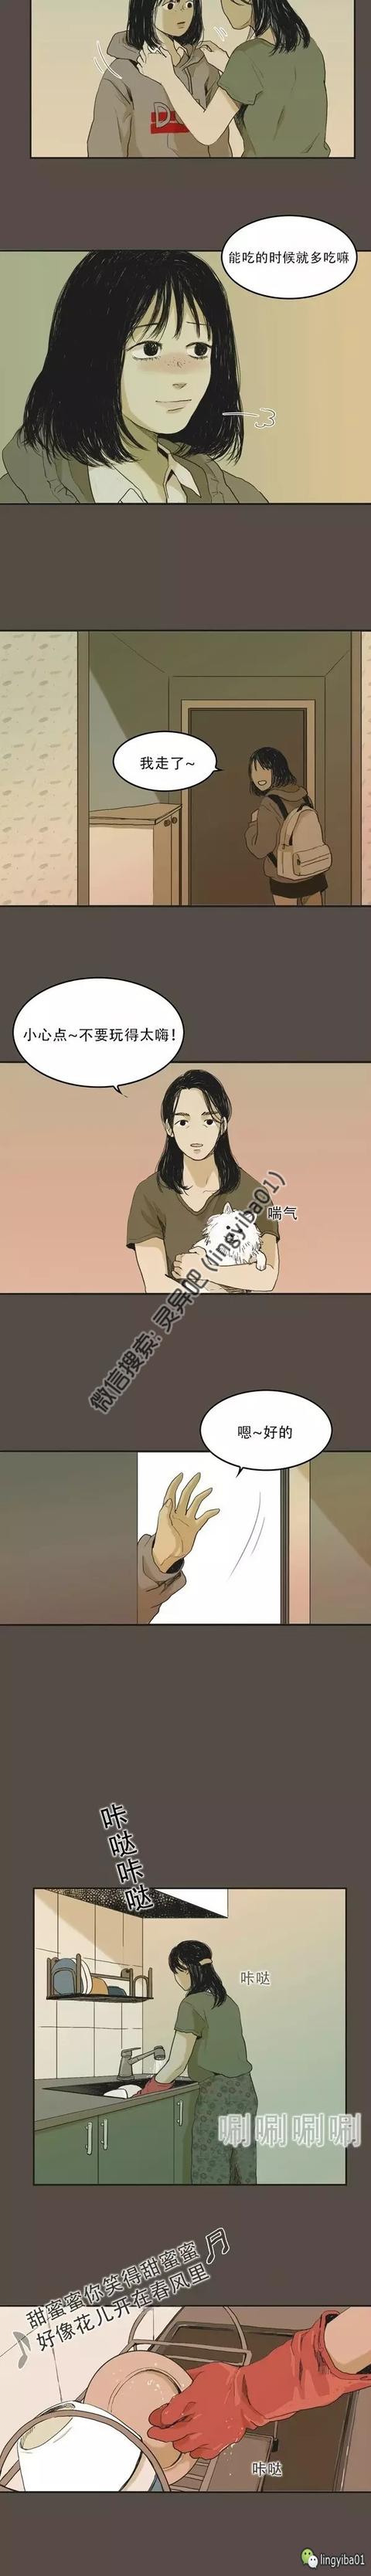 灵异漫画《亡灵花》韩国高人气漫画